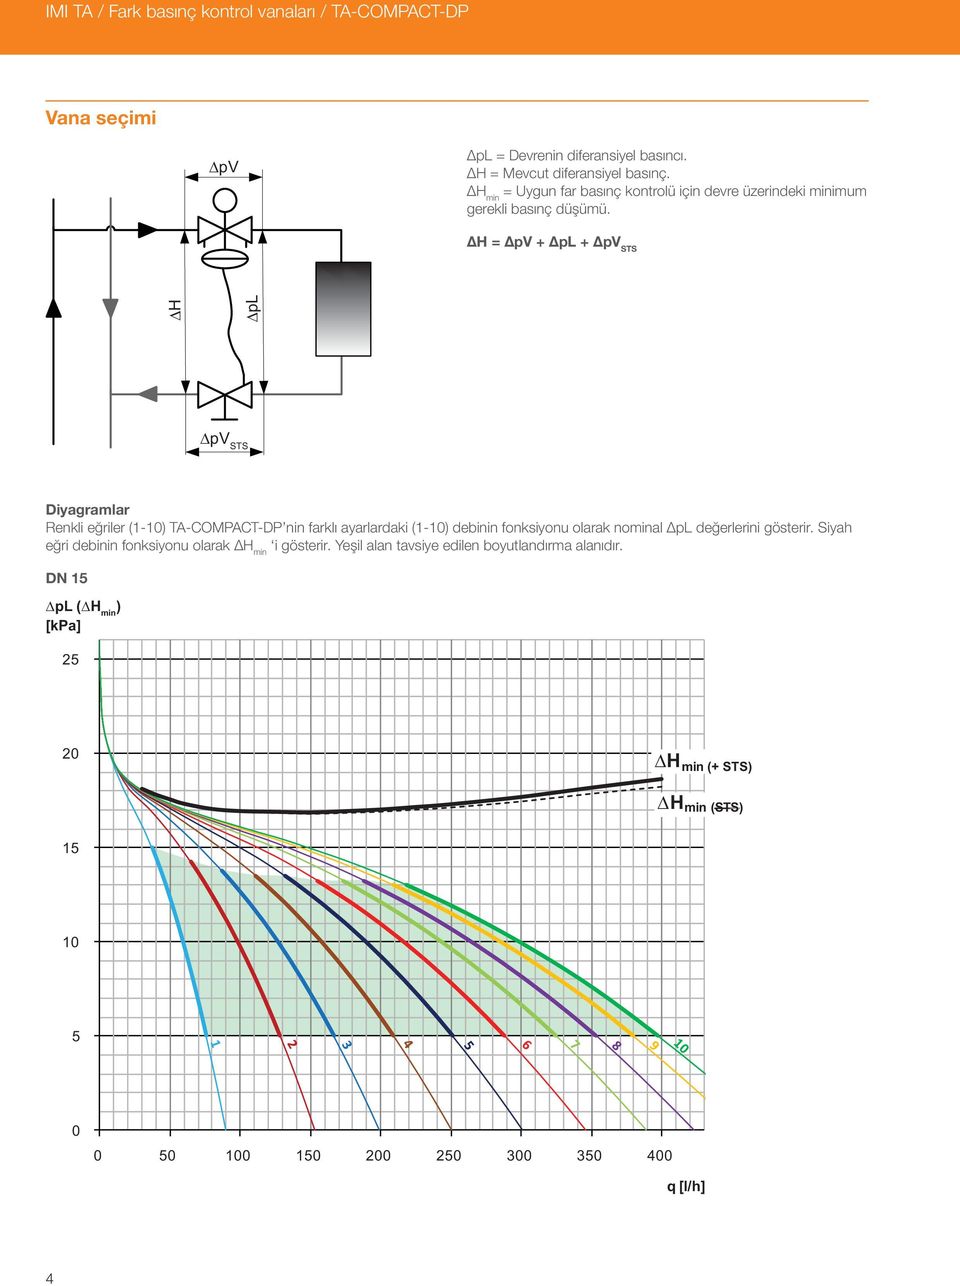 ΔH = ΔpV + Δp + ΔpV STS ΔH Δp ΔpV STS Diyagramlar Renkli eğriler (1-10) TA-COMPACT-DP nin farklı ayarlardaki (1-10) debinin fonksiyonu olarak nominal Δp